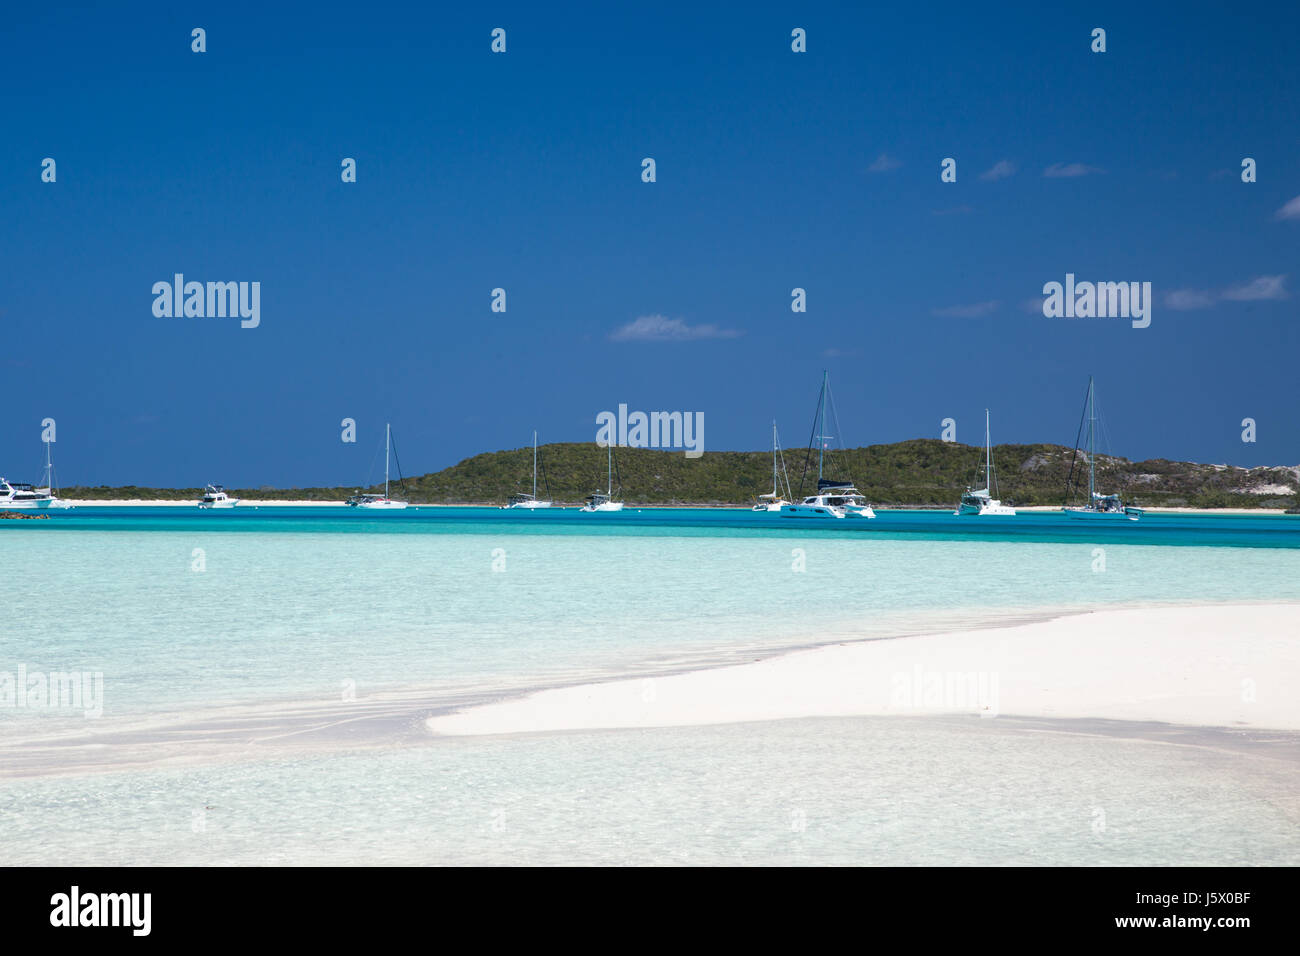 Un occupato exuma bahamas ancoraggio con barche a vela e scanni Foto Stock